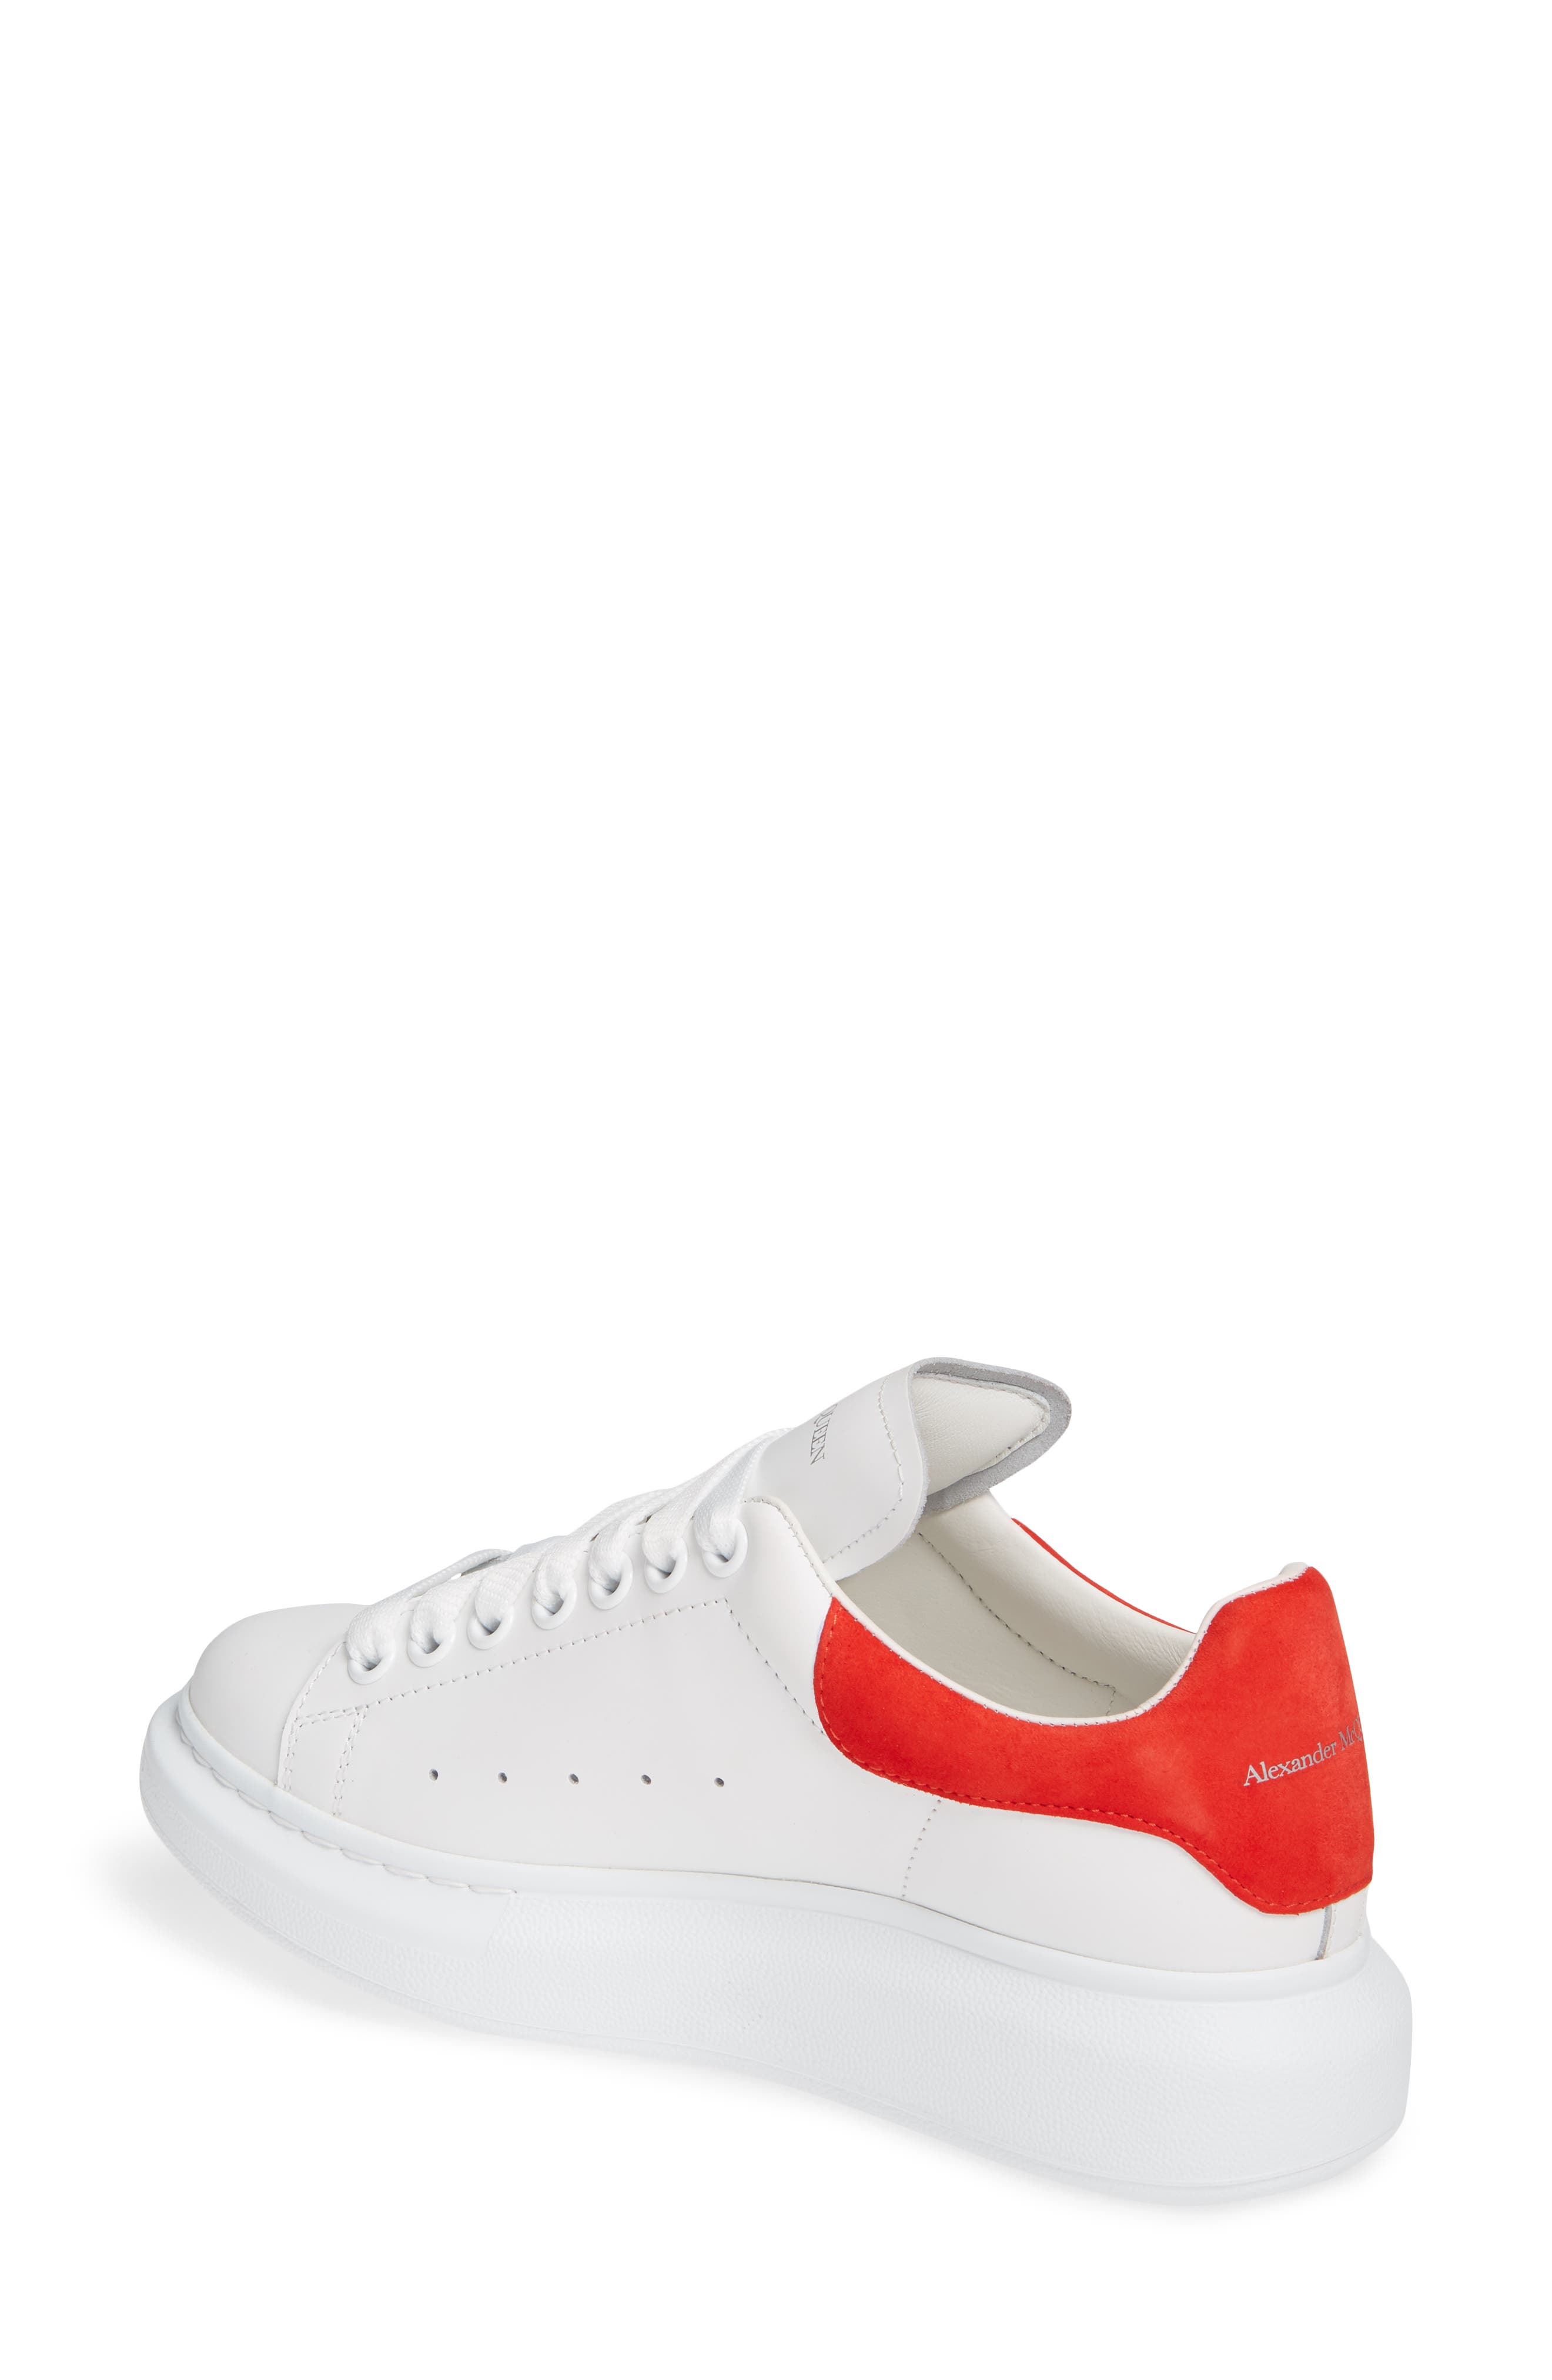 red mcqueen sneakers